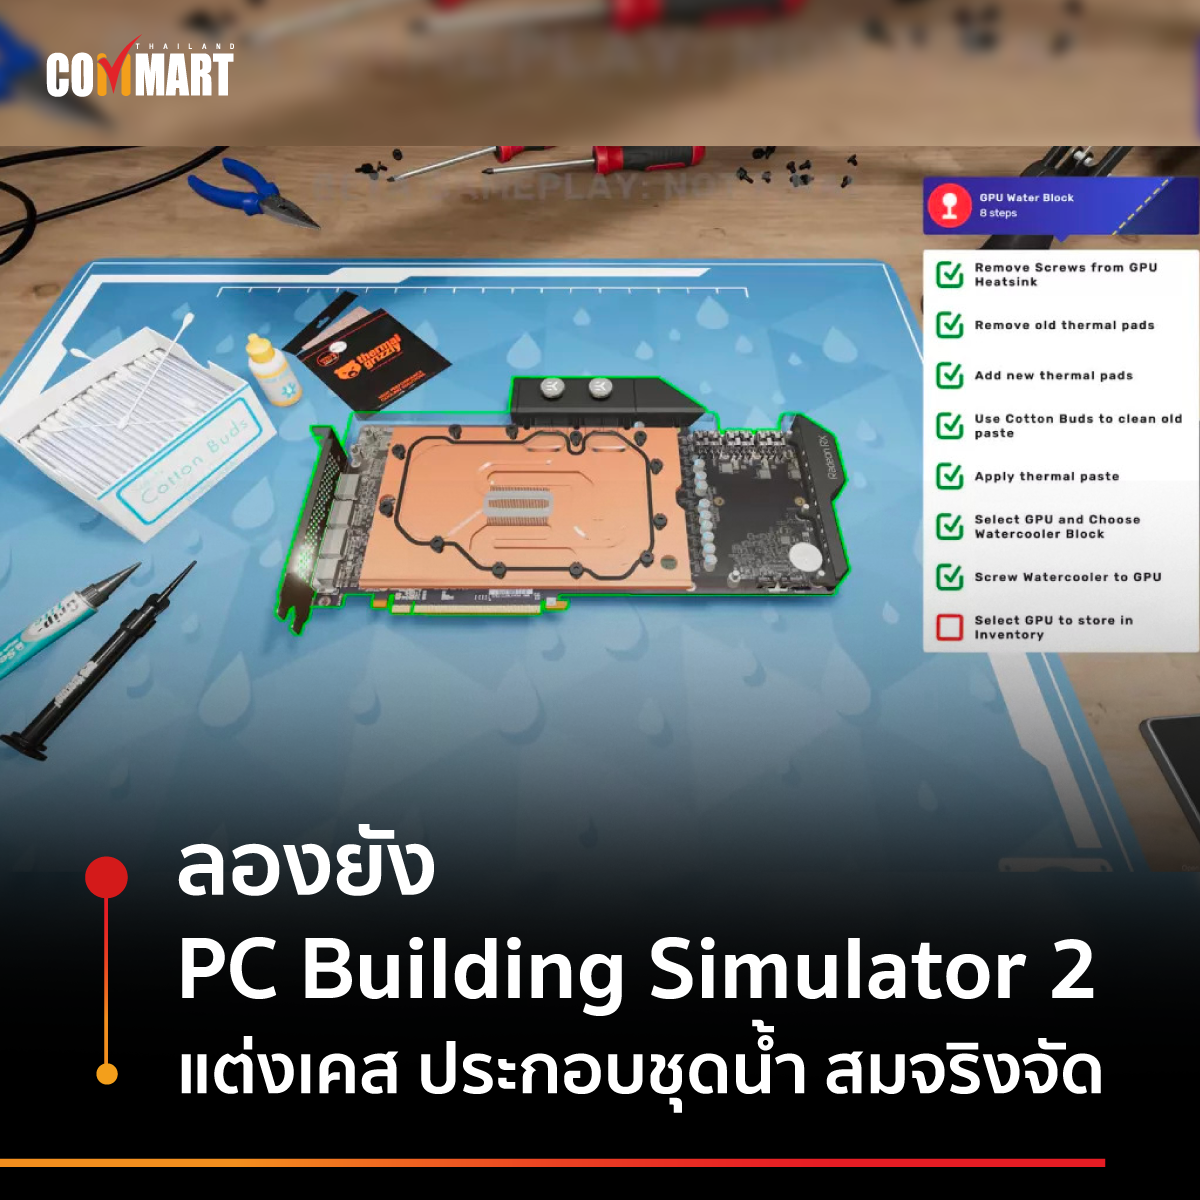 ลองยัง PC Building Simulator 2 แต่งเคส ประกอบชุดน้ำ สมจริงจัด